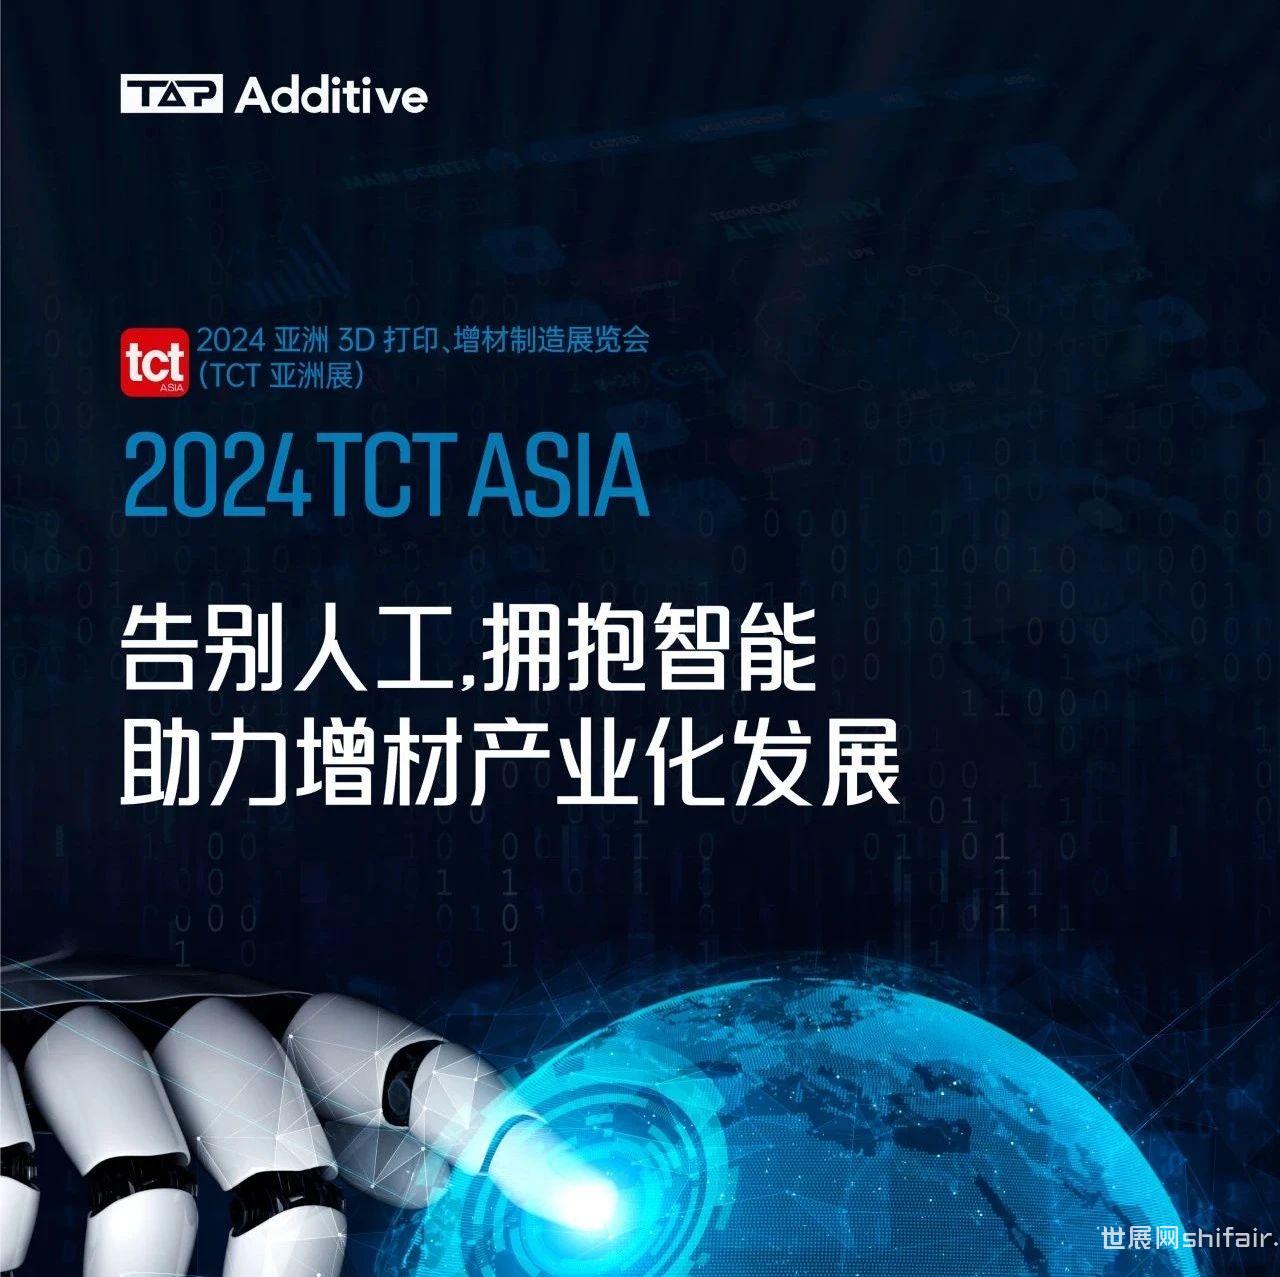 展商动态 | @所有人，拓博增材邀您相聚2024 TCT亚洲展！